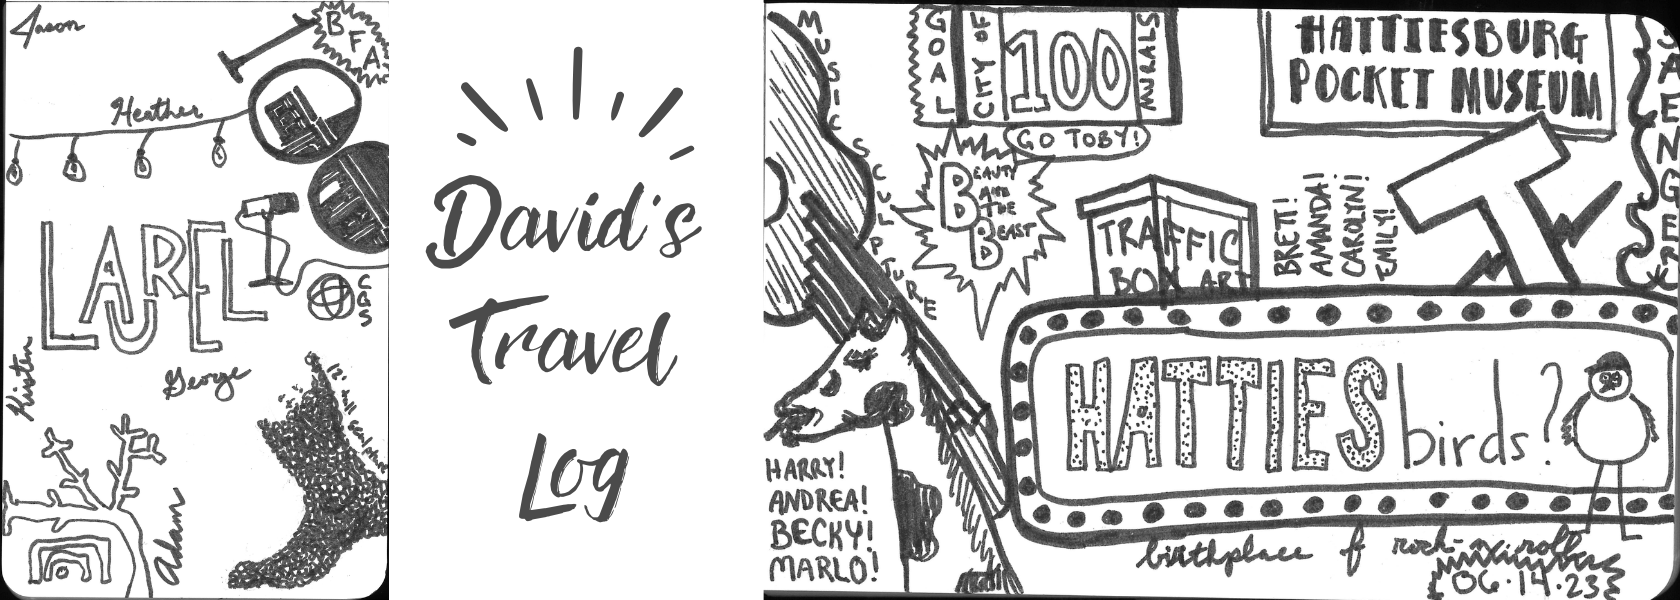 David's Travel Log